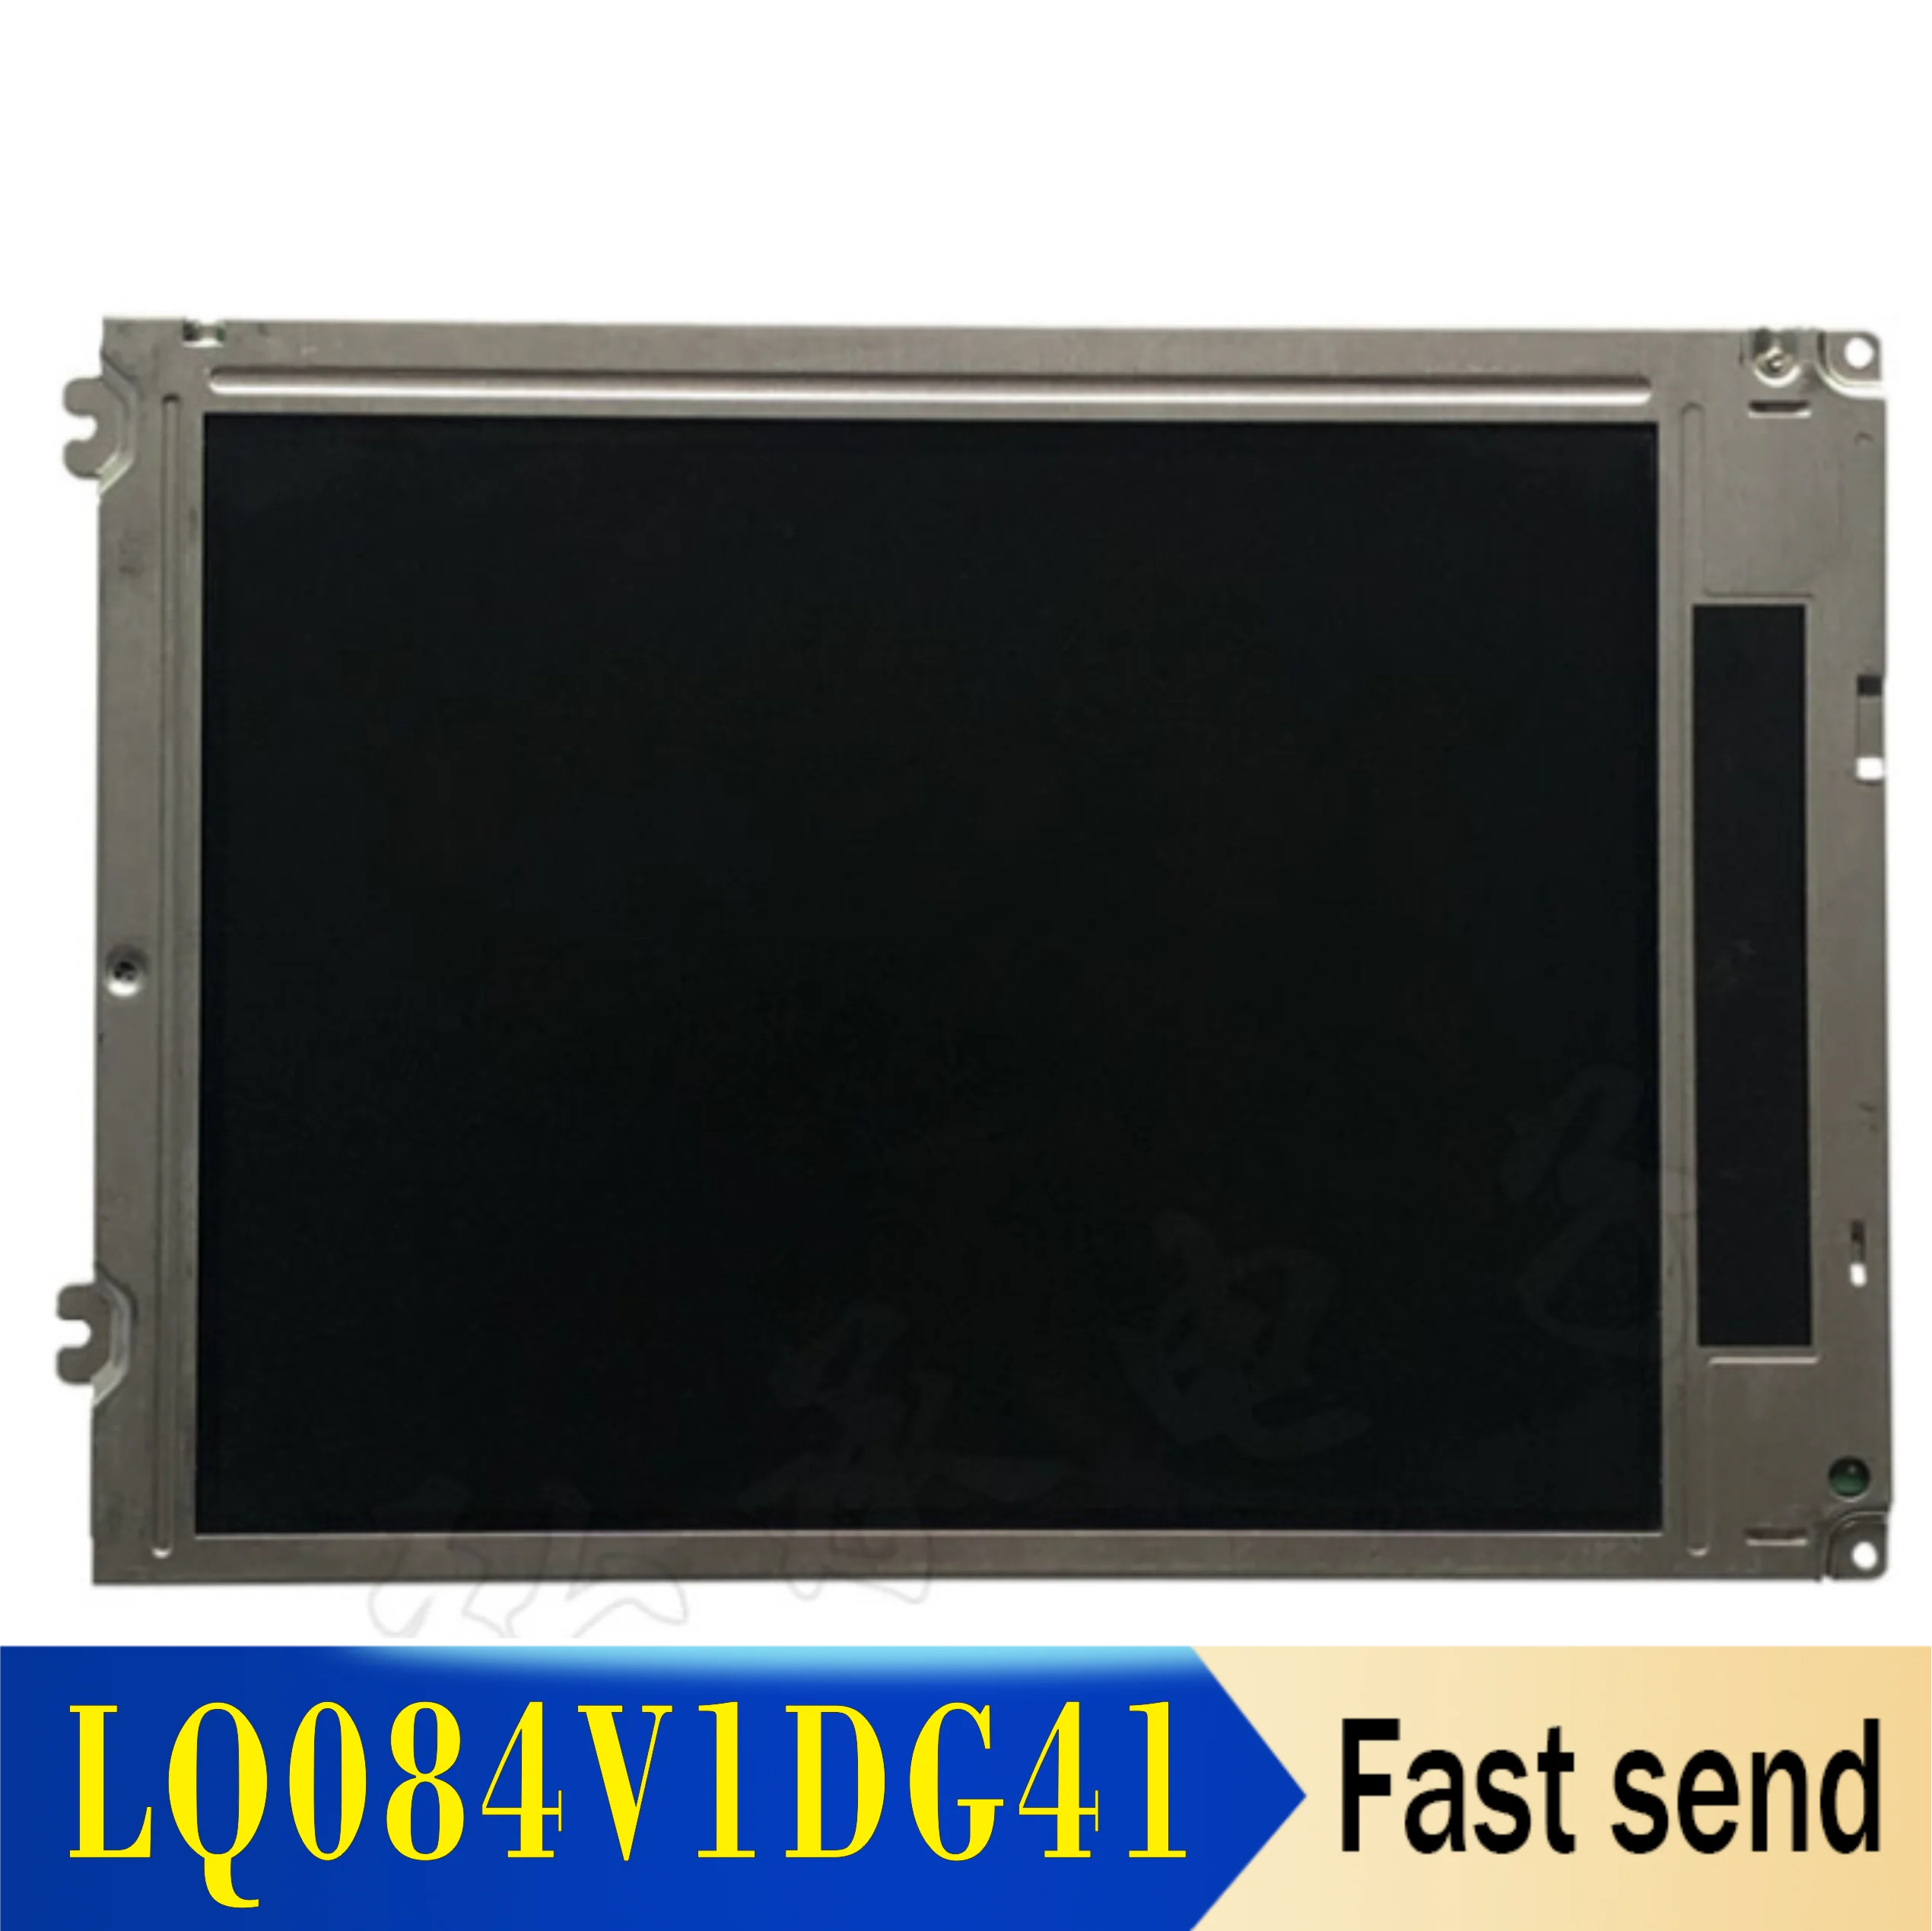 Техническое Обслуживание и замена Оригинального Промышленного ЖК-экрана с Диагональю 8,4 дюйма LQ084V1DG41 LQ084V1DG42 LQ084V1DG21 LQ084V1DG22